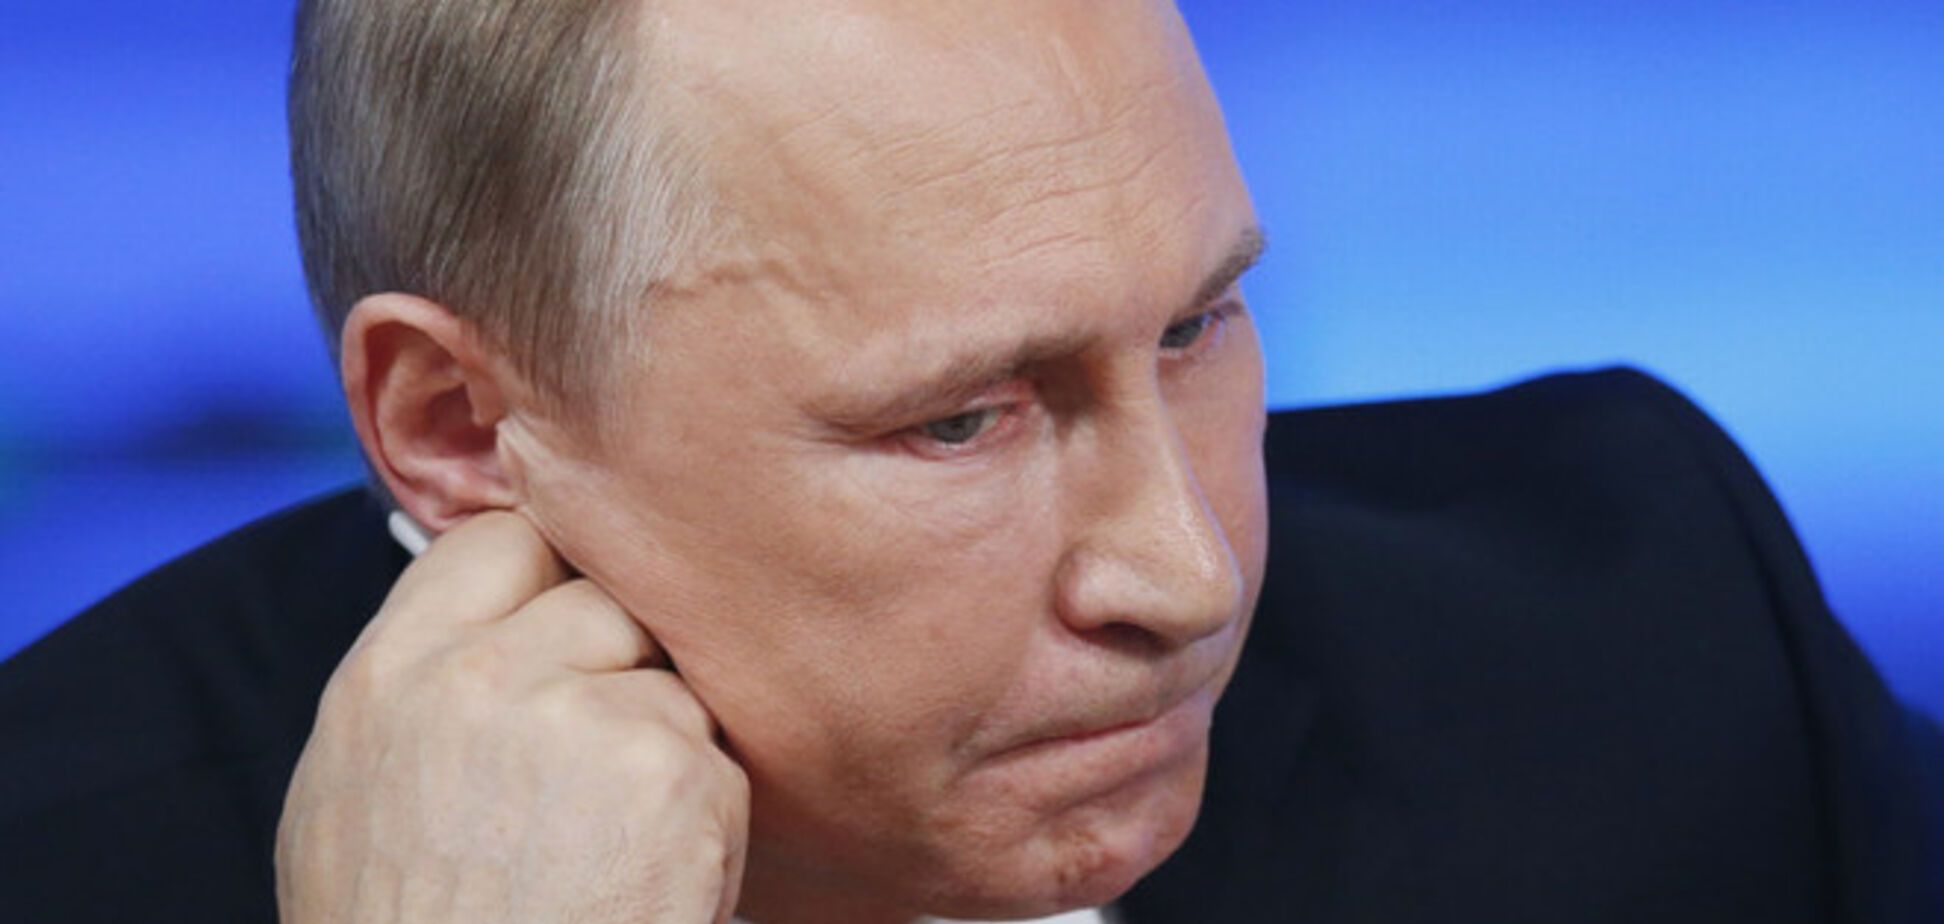 Понятие выгоды в голове у Путина давно вытеснено 'сакральностью' - бывший вице-премьер РФ